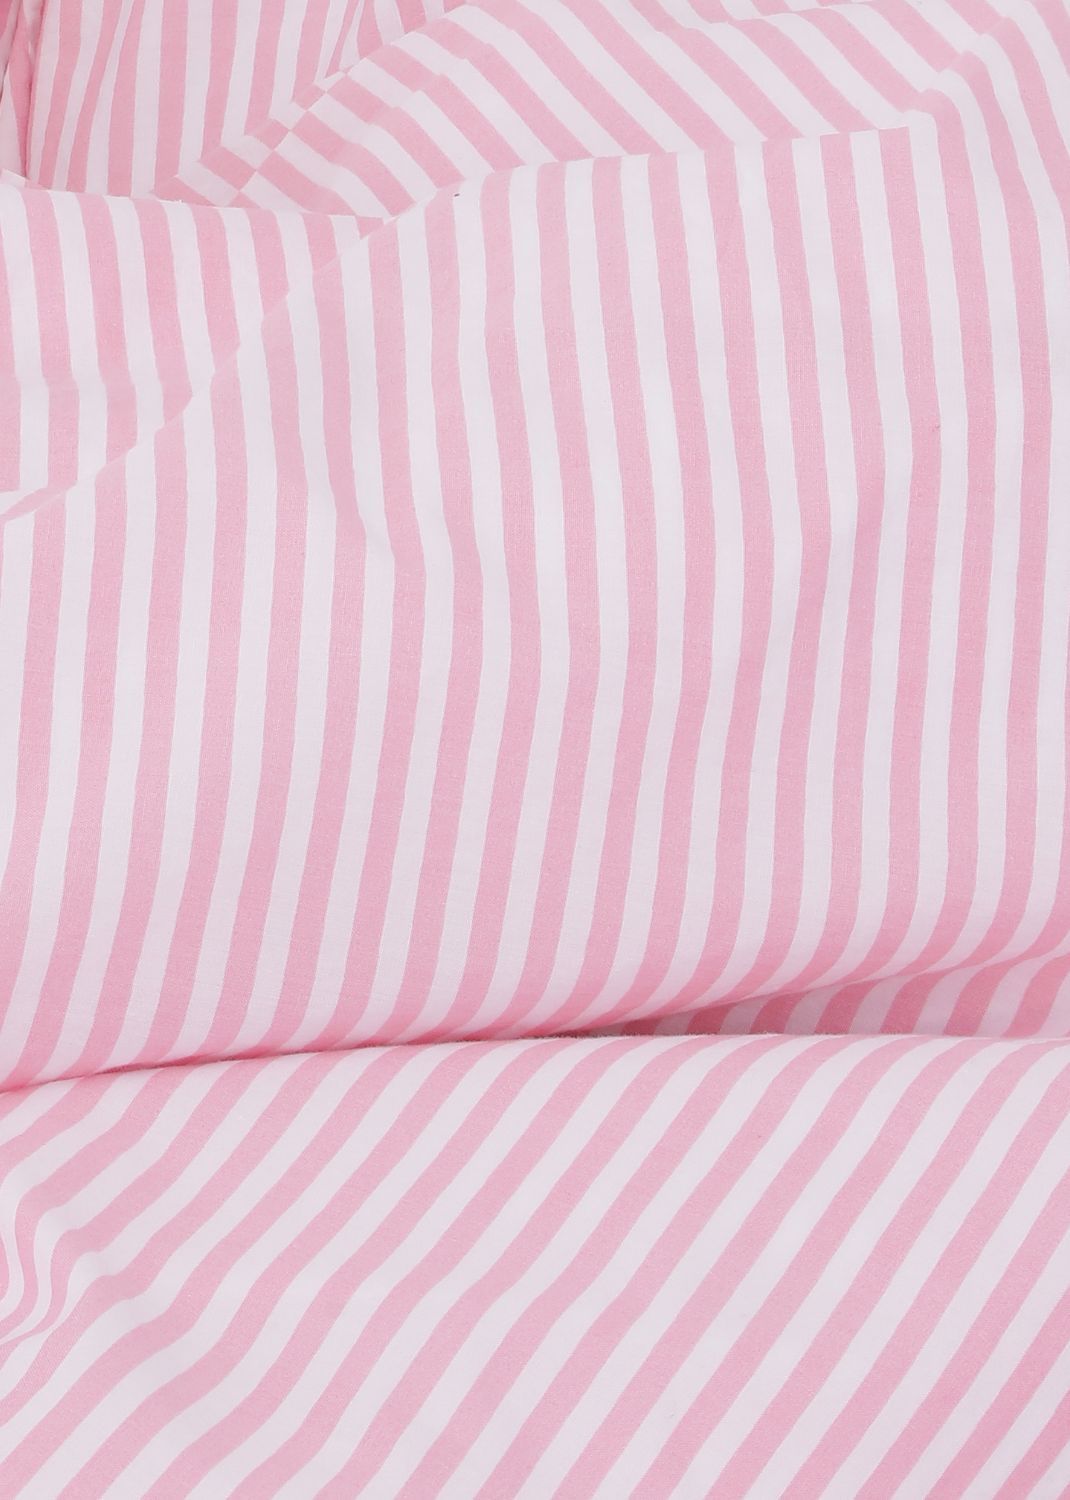 Sekan Studio Blank x Sekan - Percale sengesæt - Pink strib